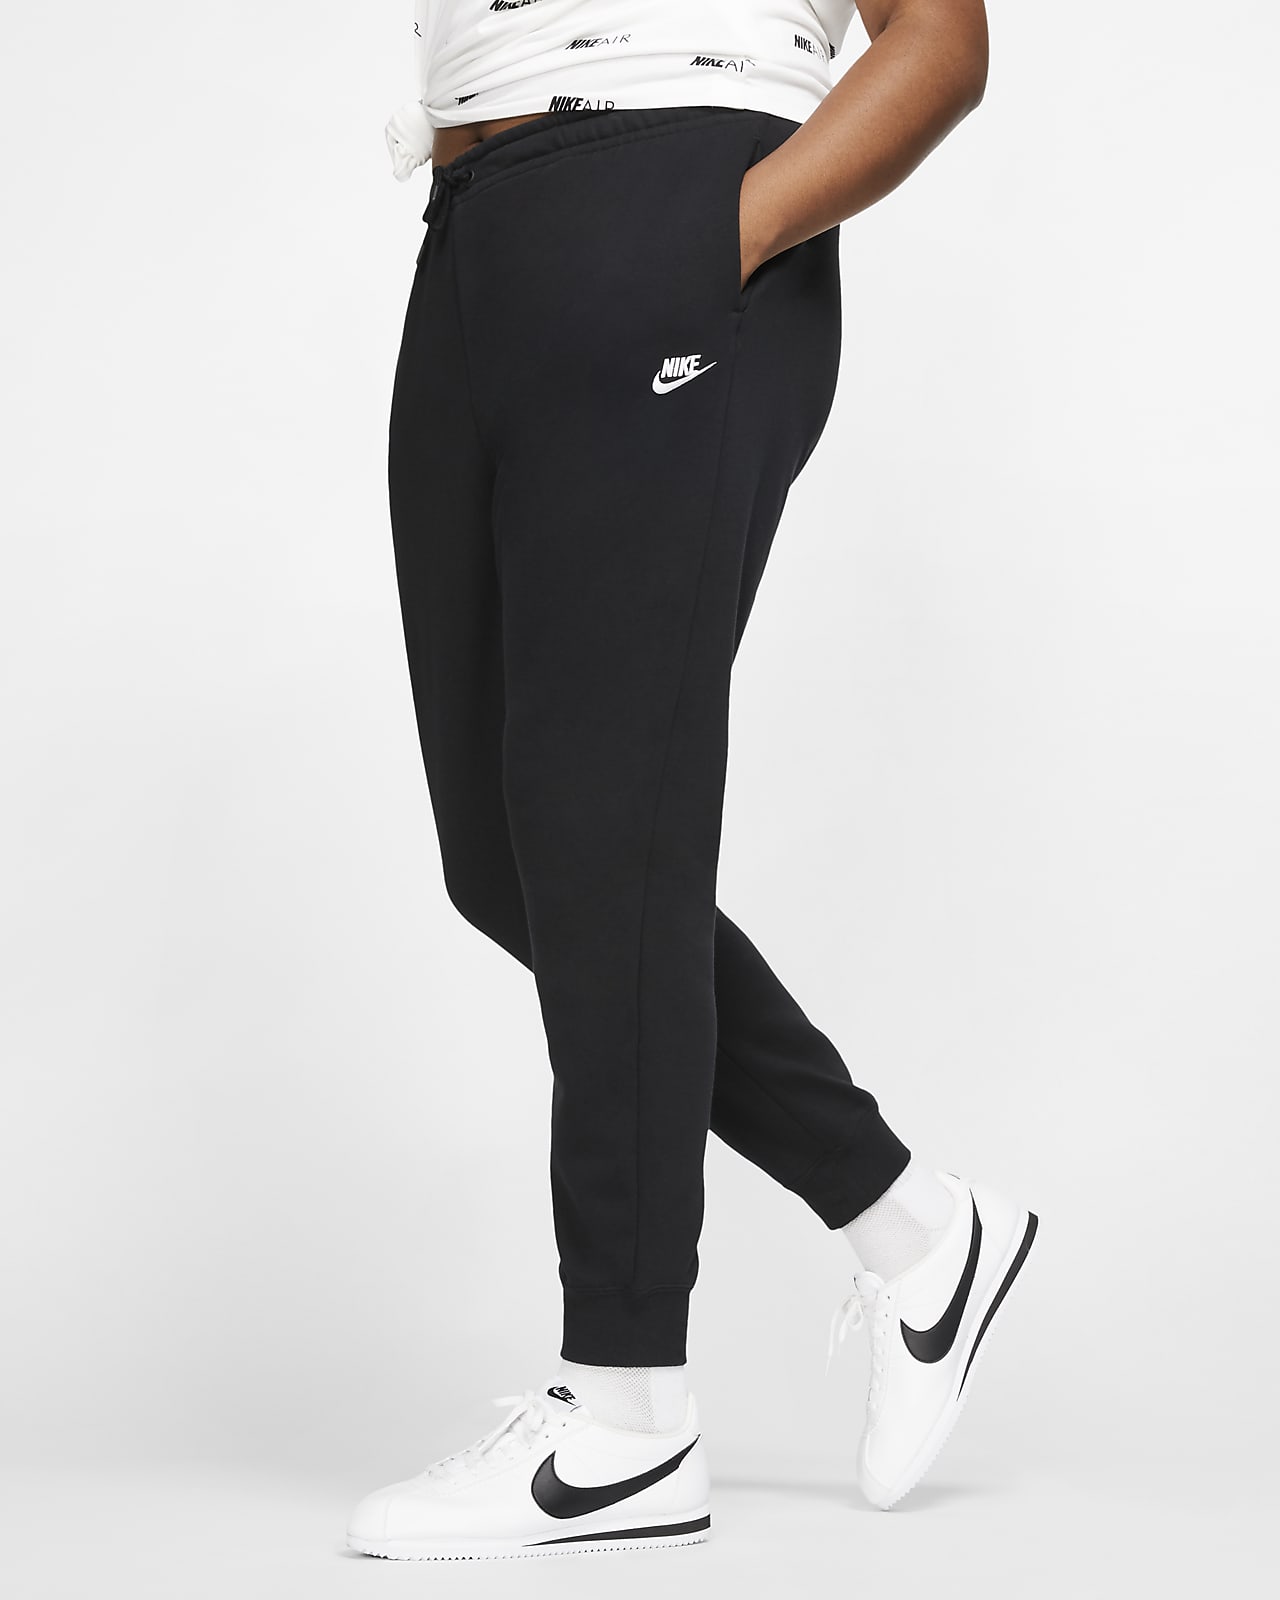 Pantalon en Fleece Nike Sportswear Essential pour Femme (grande taille)